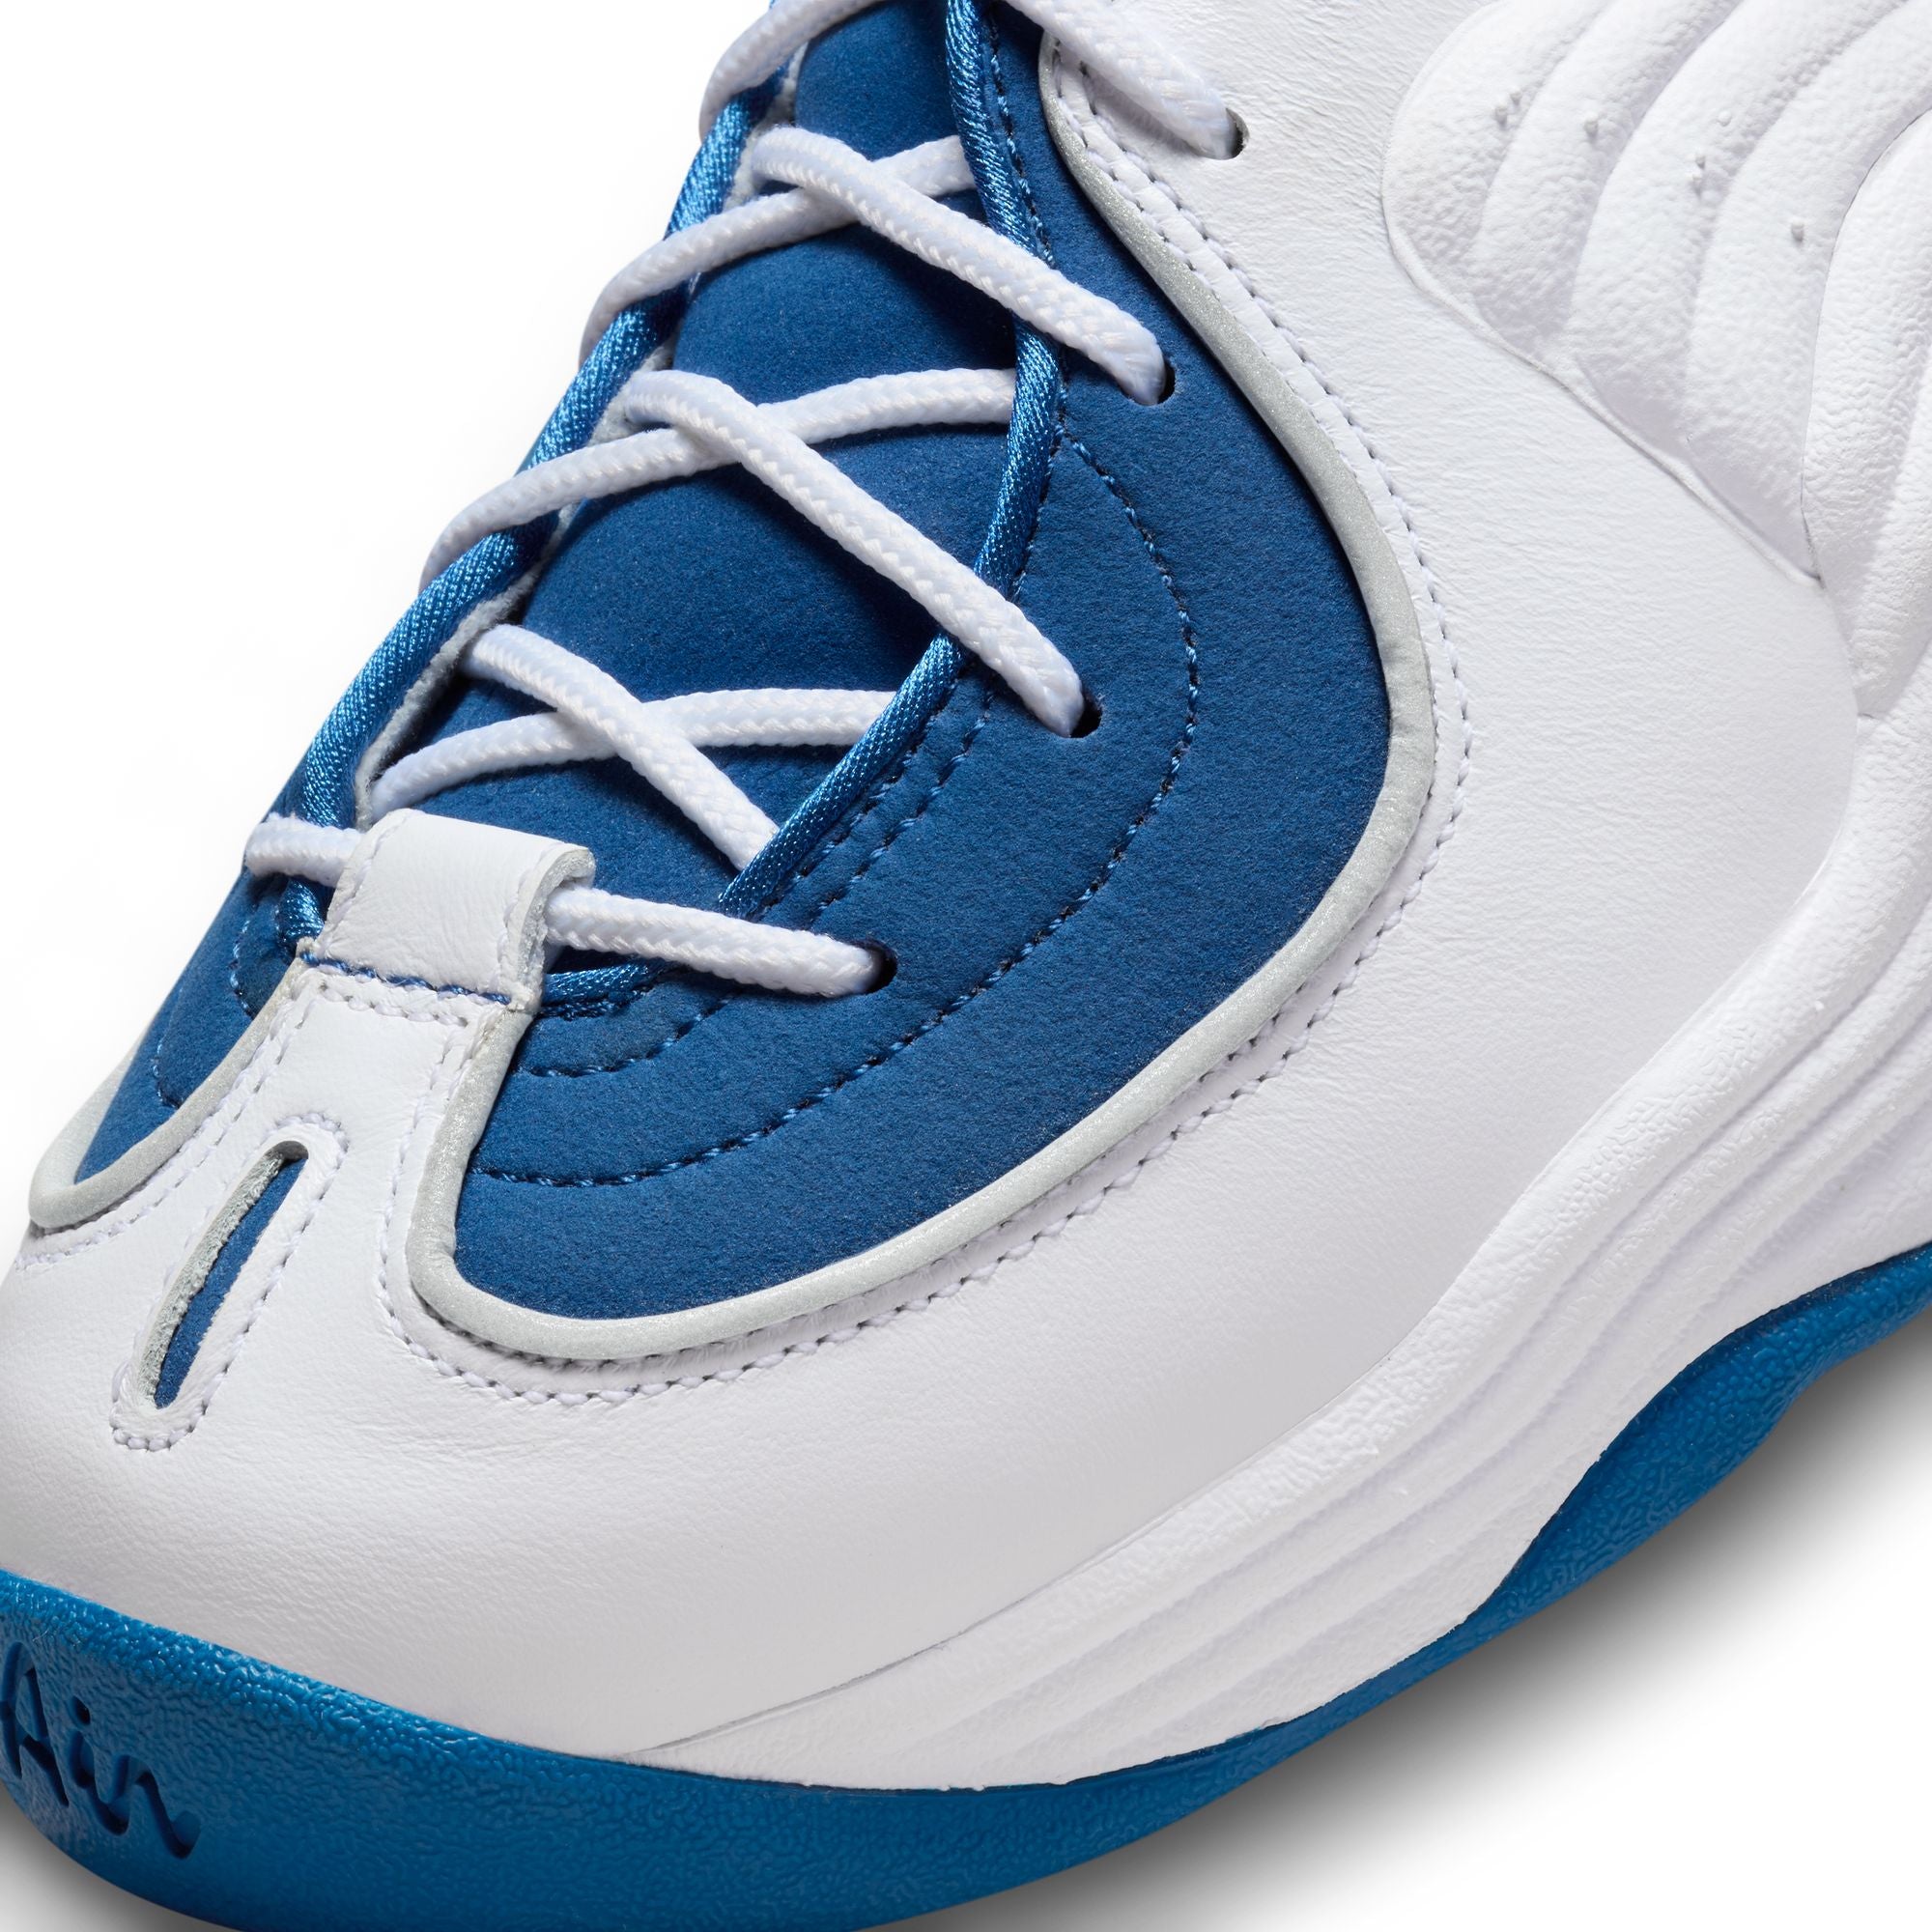 Nike Air Penny 2 QS 'Atlantic Blue'